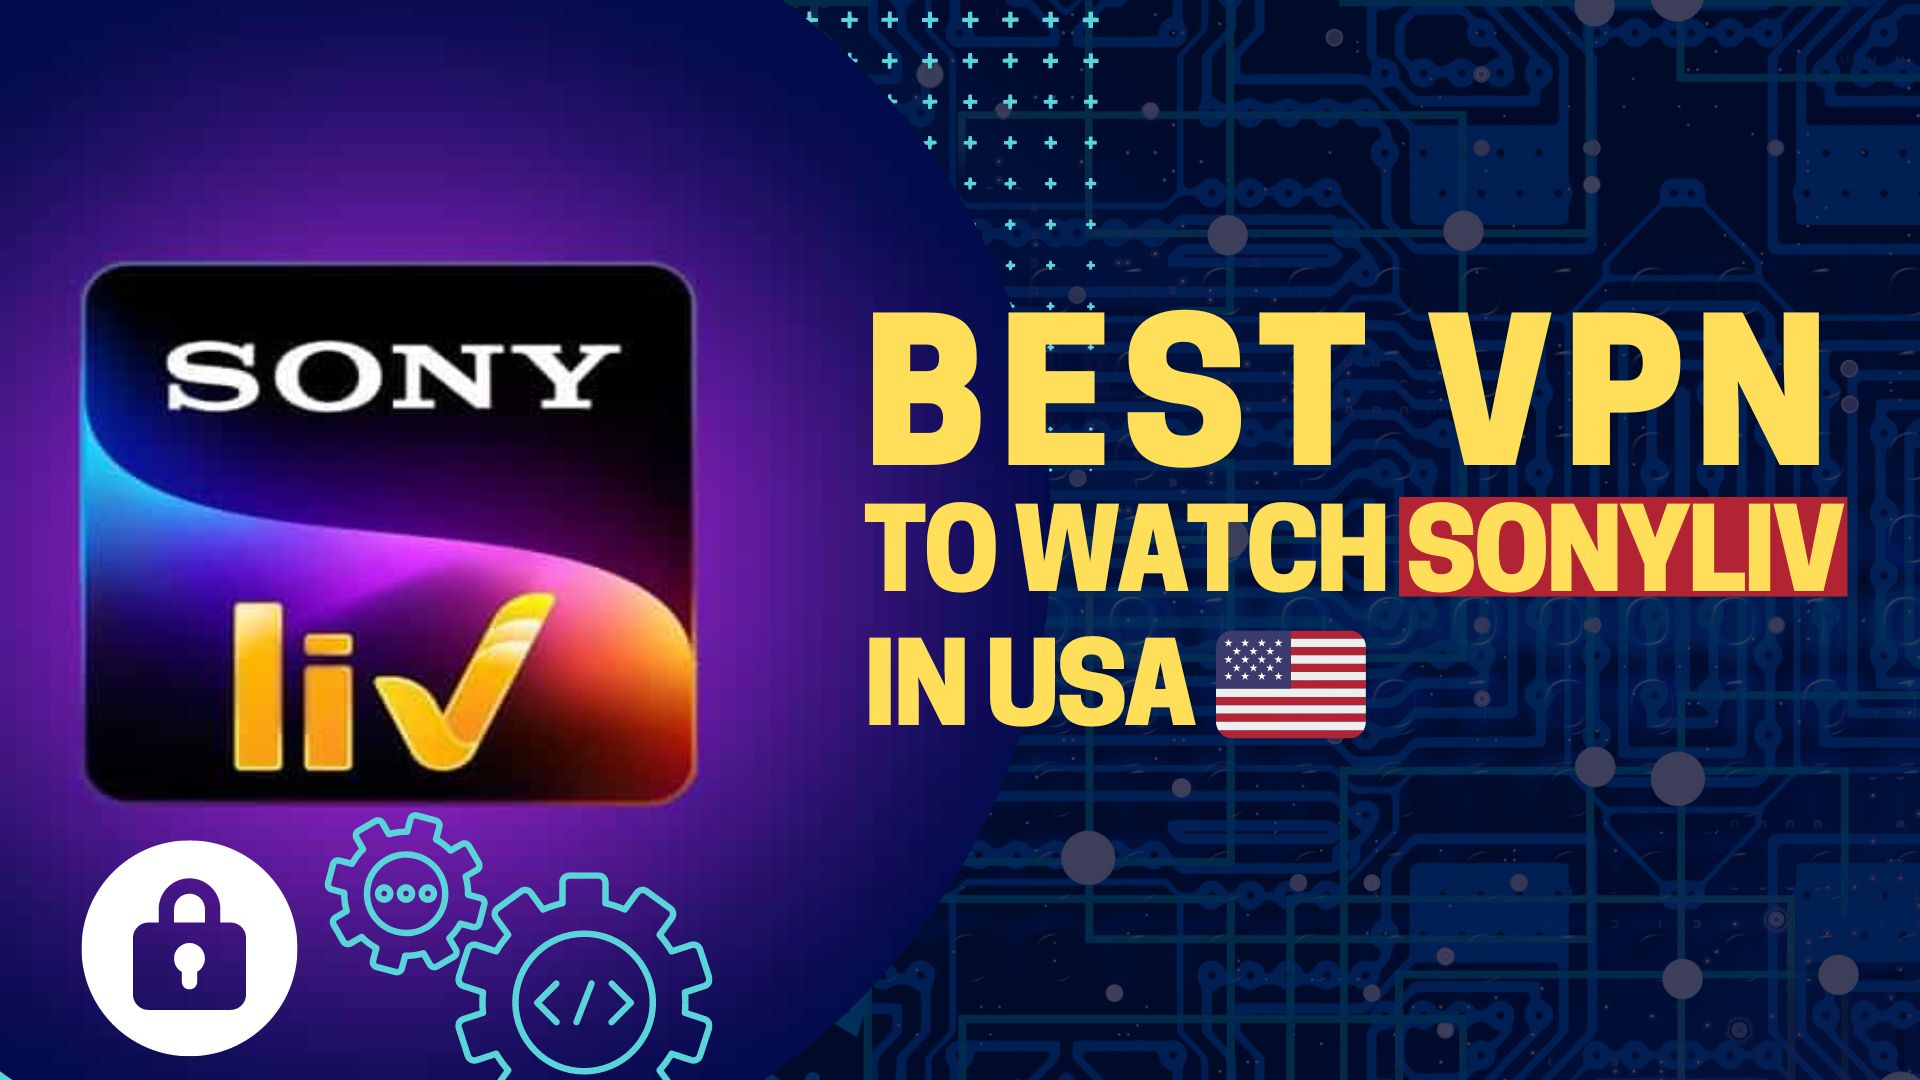 5 Best VPN to Watch SonyLiv in USA Discount Offers